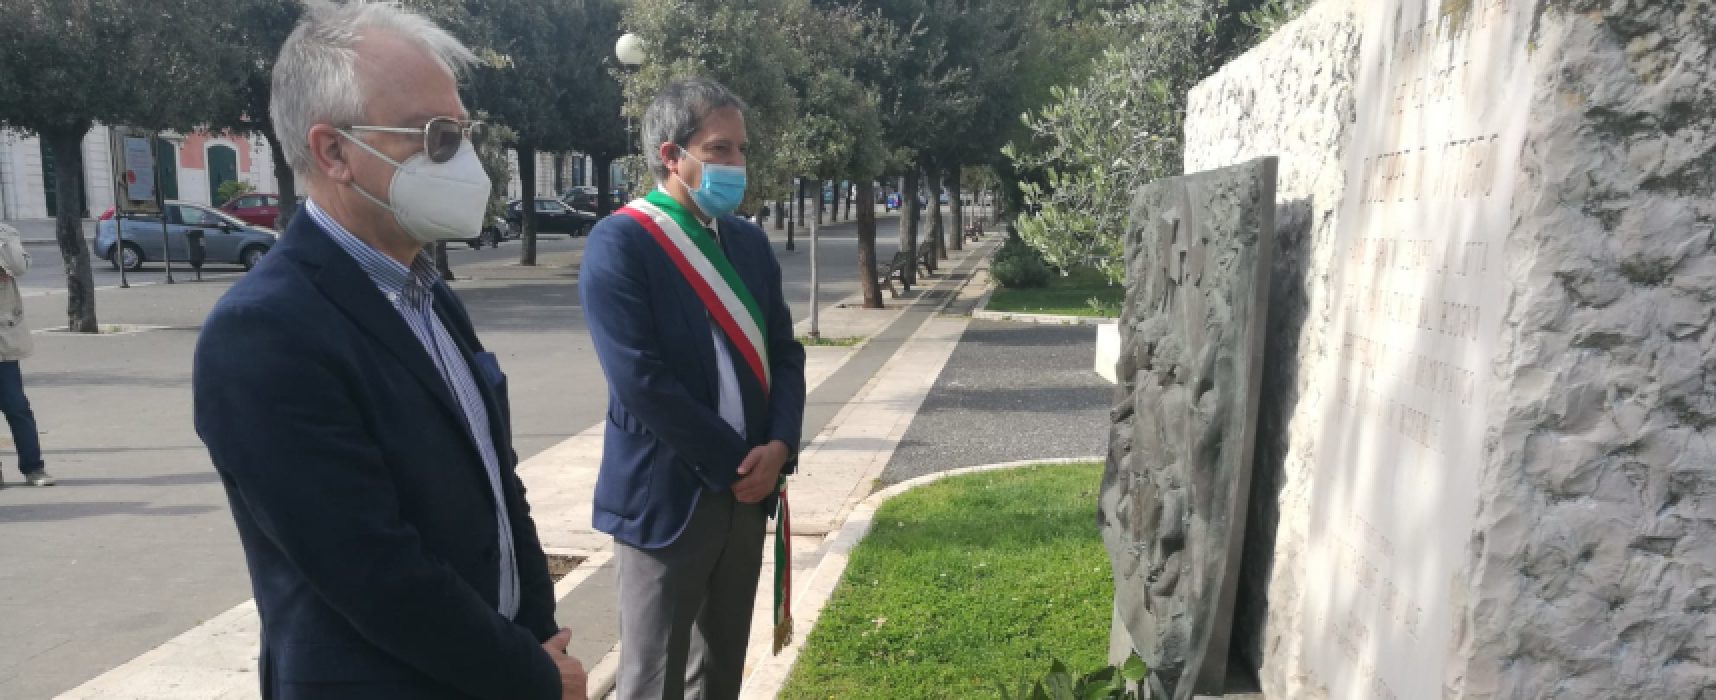 Sindaco Angarano e Segretario Cgil Bat D’Alberto depositano corona a monumento Di Vittorio